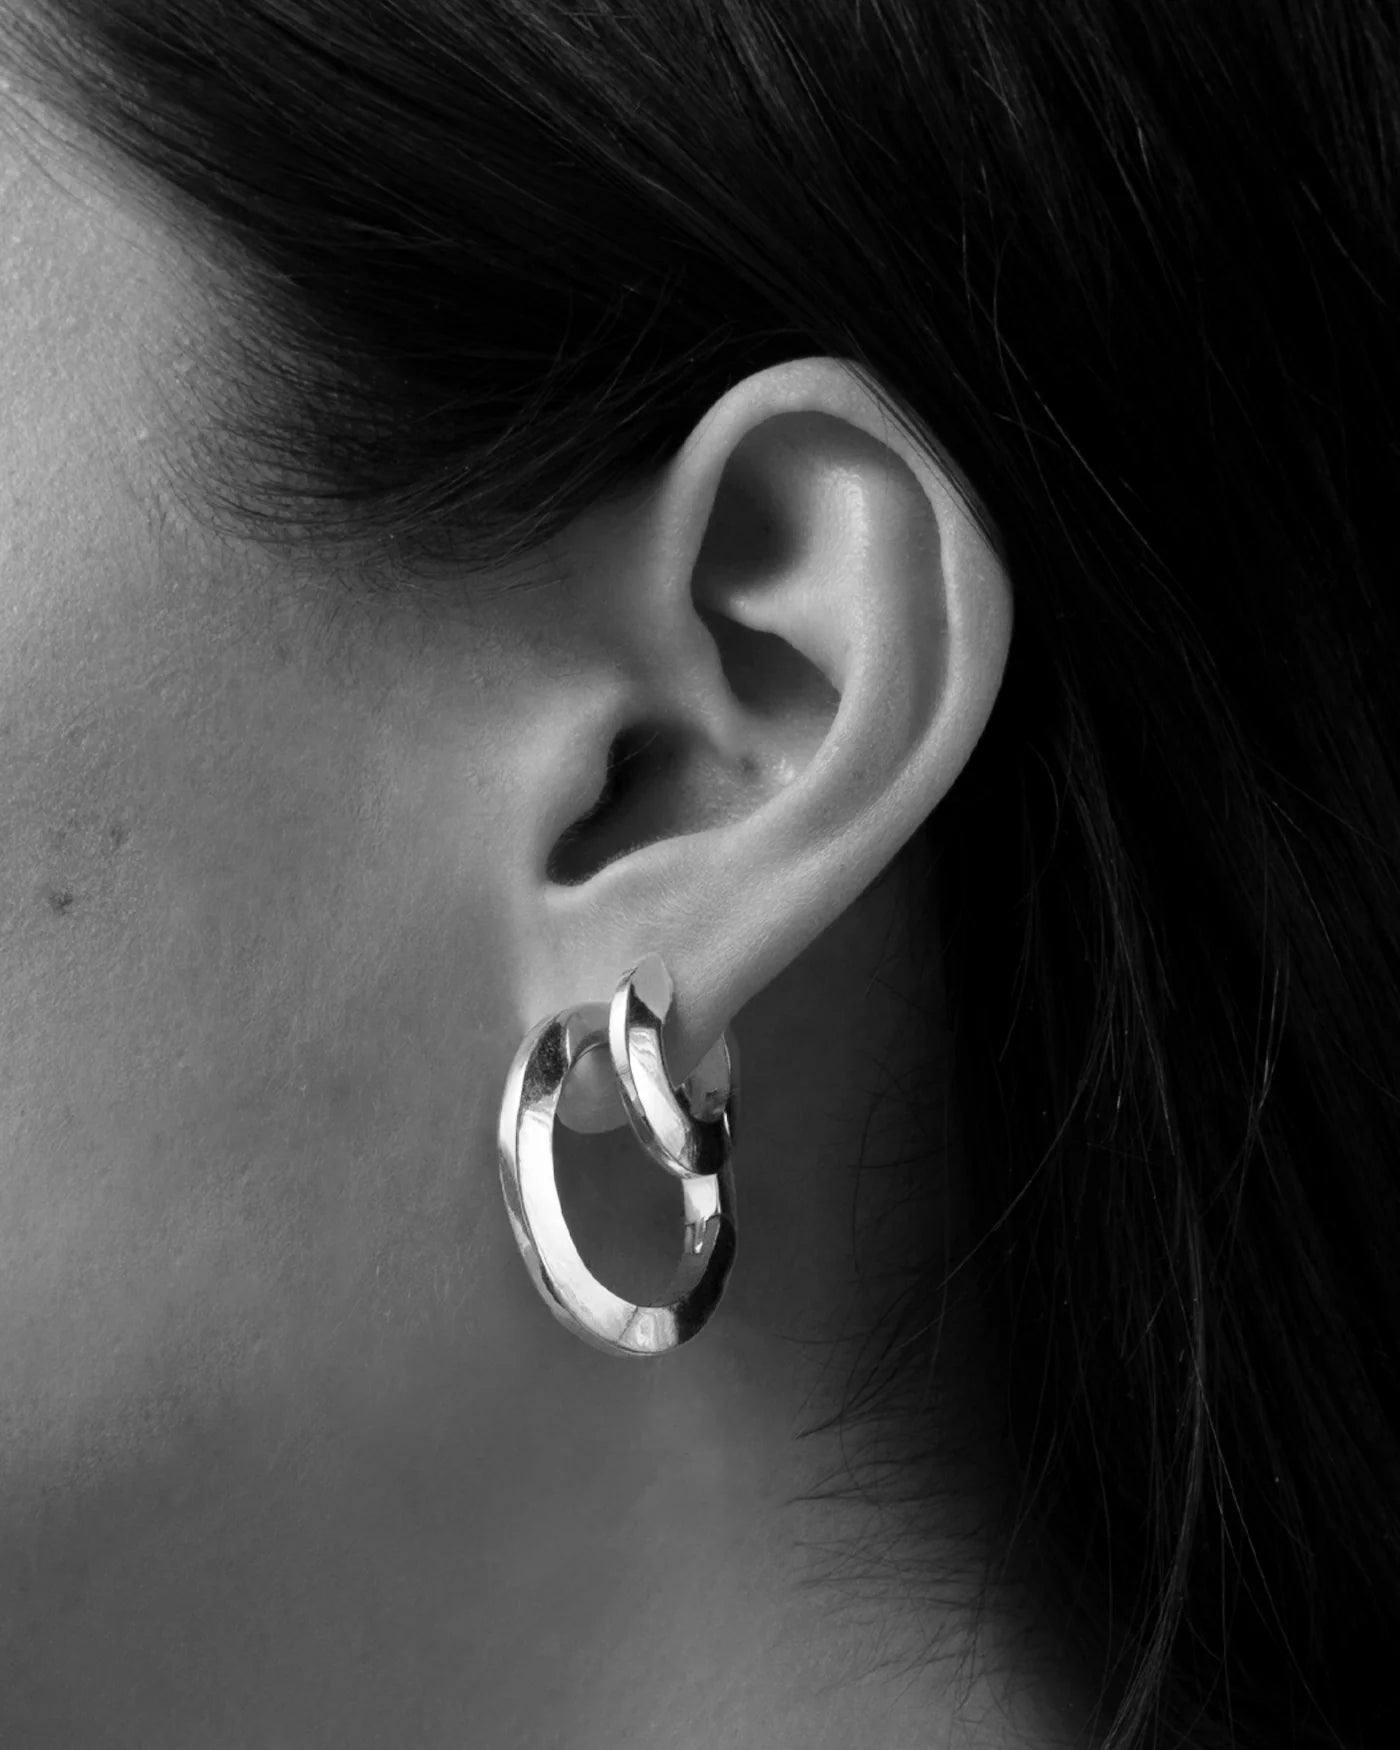 Toni Hinged Hoop Earrings by Jenny Bird